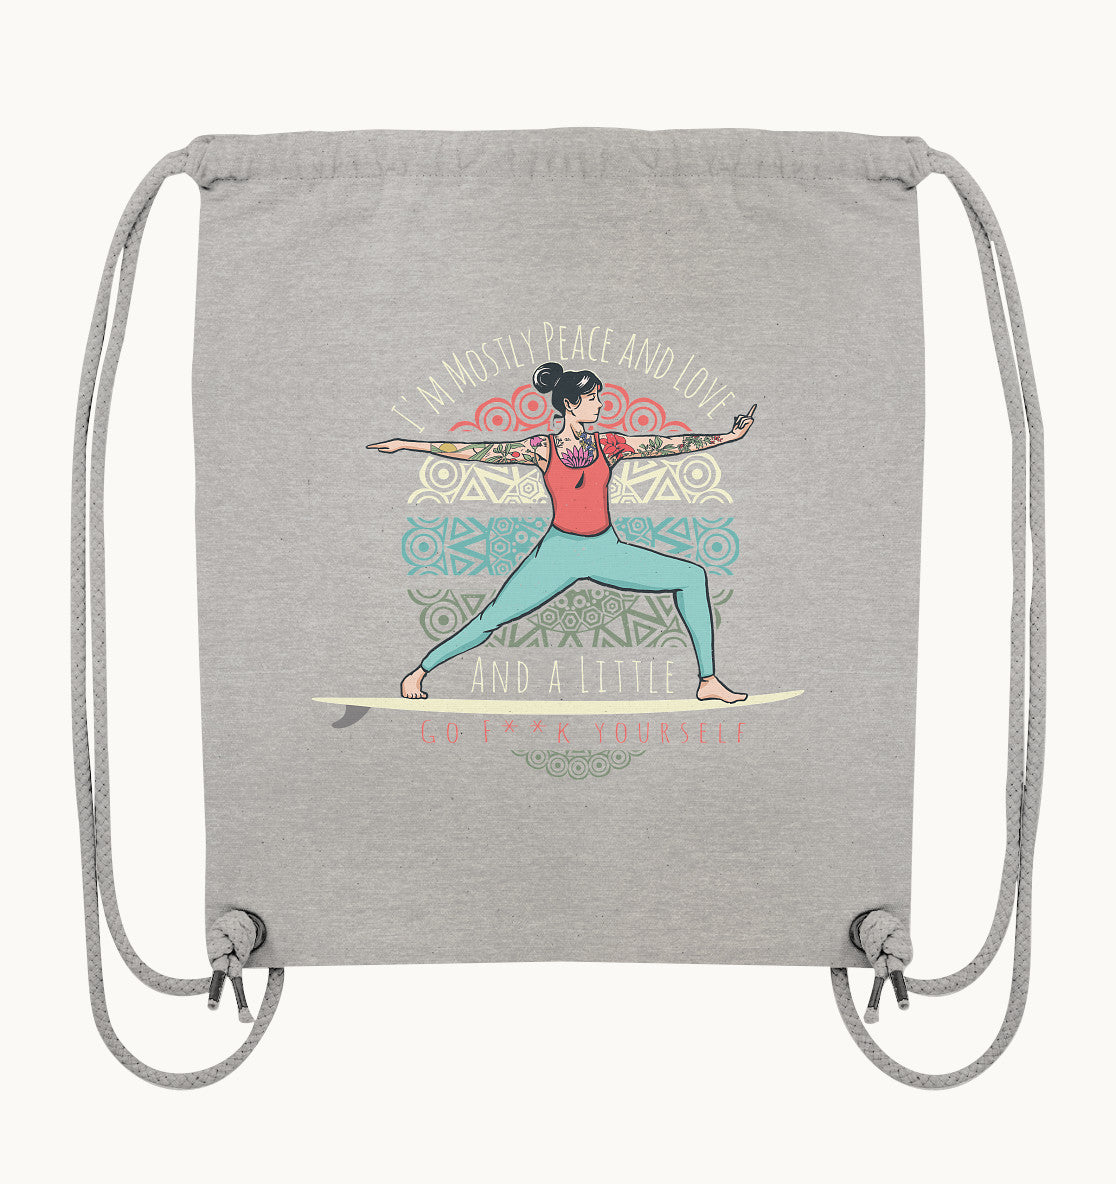 SUP-Yoga Peace and Love - Organic Gym-Bag